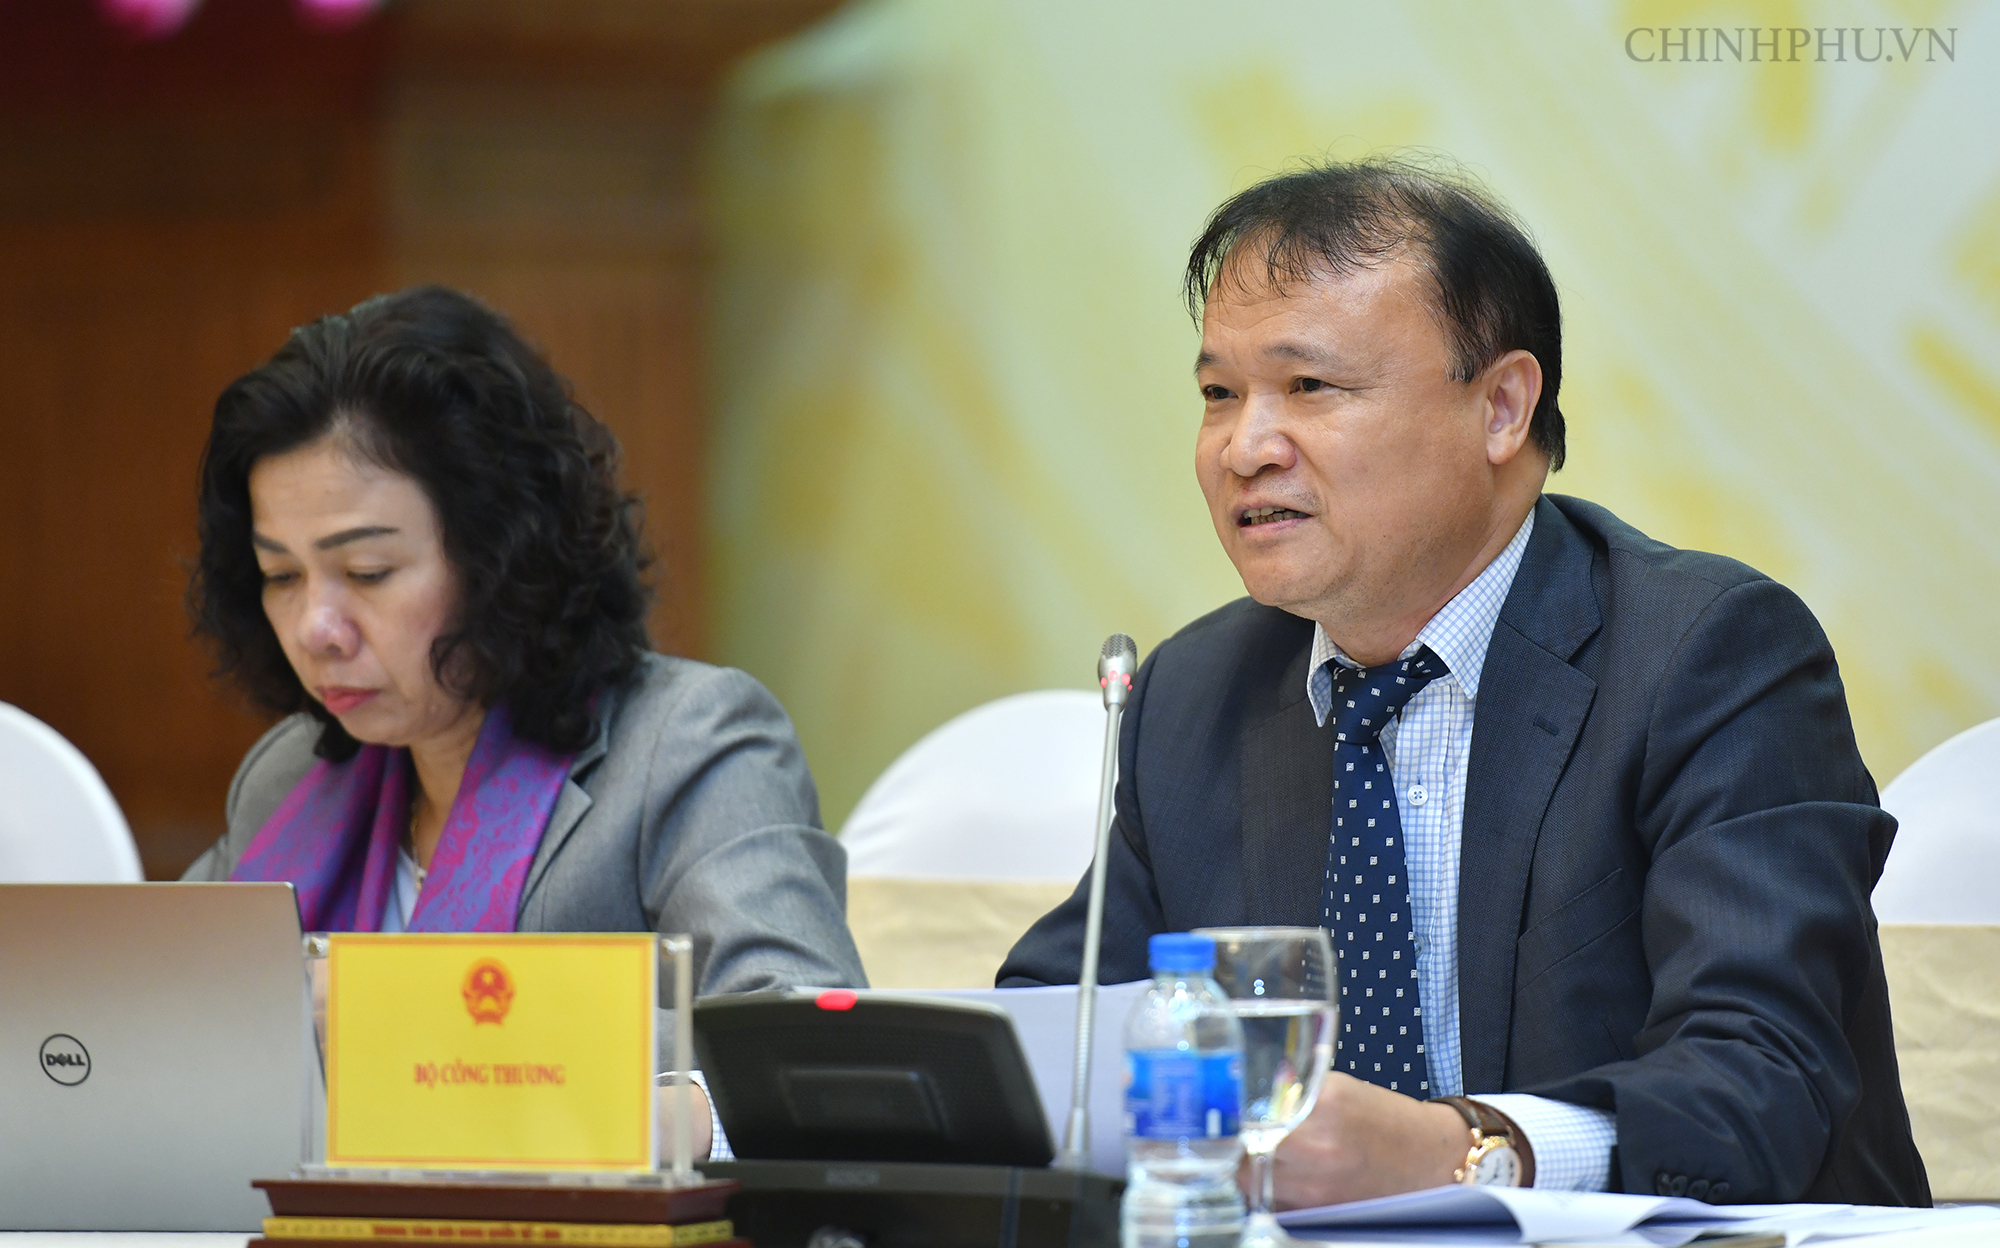 Thứ trưởng Bộ Công Thương Đỗ Thắng Hải trao đổi tại cuộc họp báo Chính phủ thường kỳ chiều 3/12 (Ảnh: Chinhphu.vn)